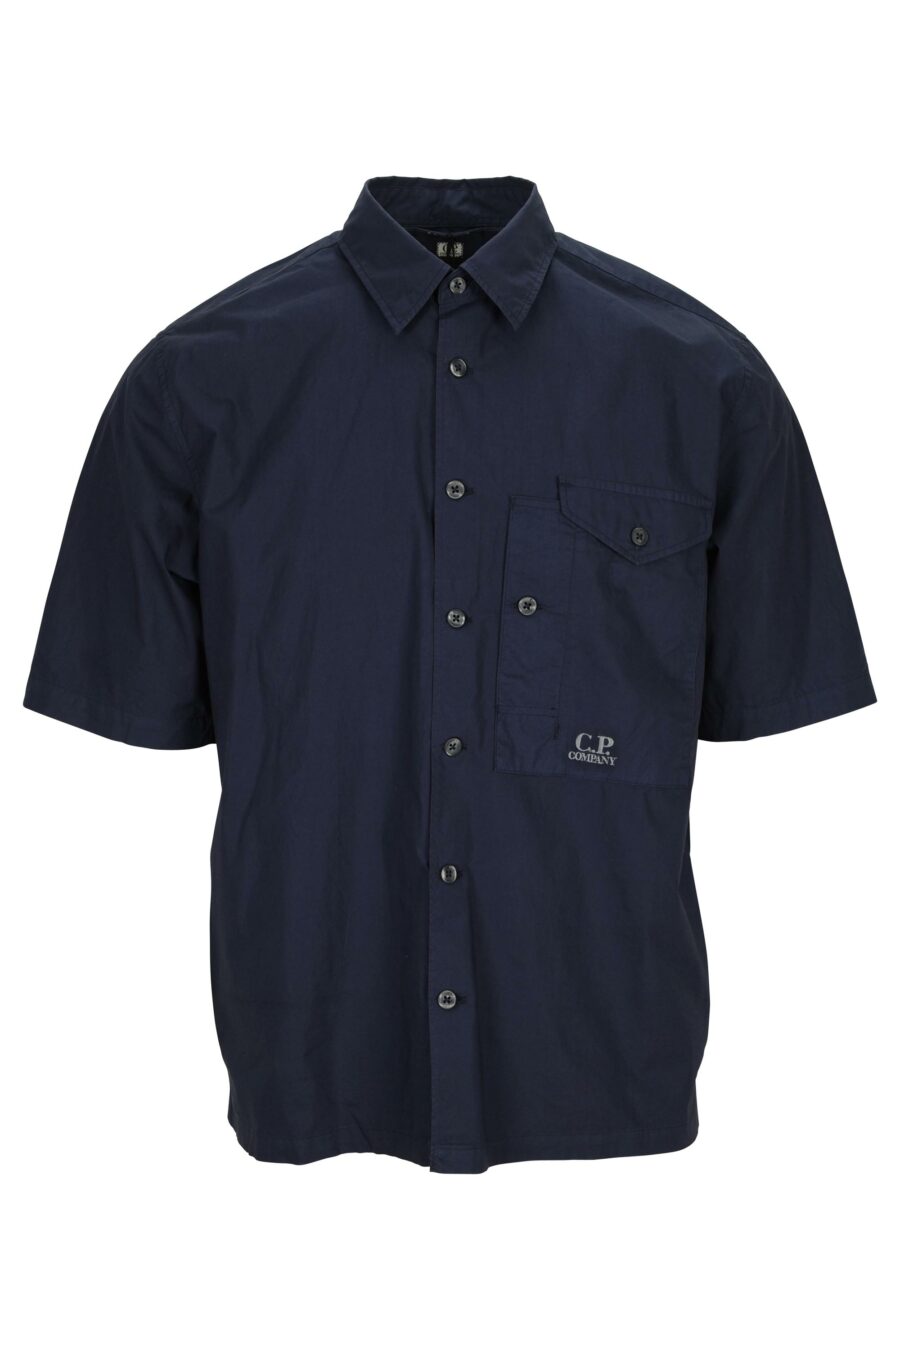 Chemise à manches courtes bleu foncé avec poche et mini logo - 7620943811551